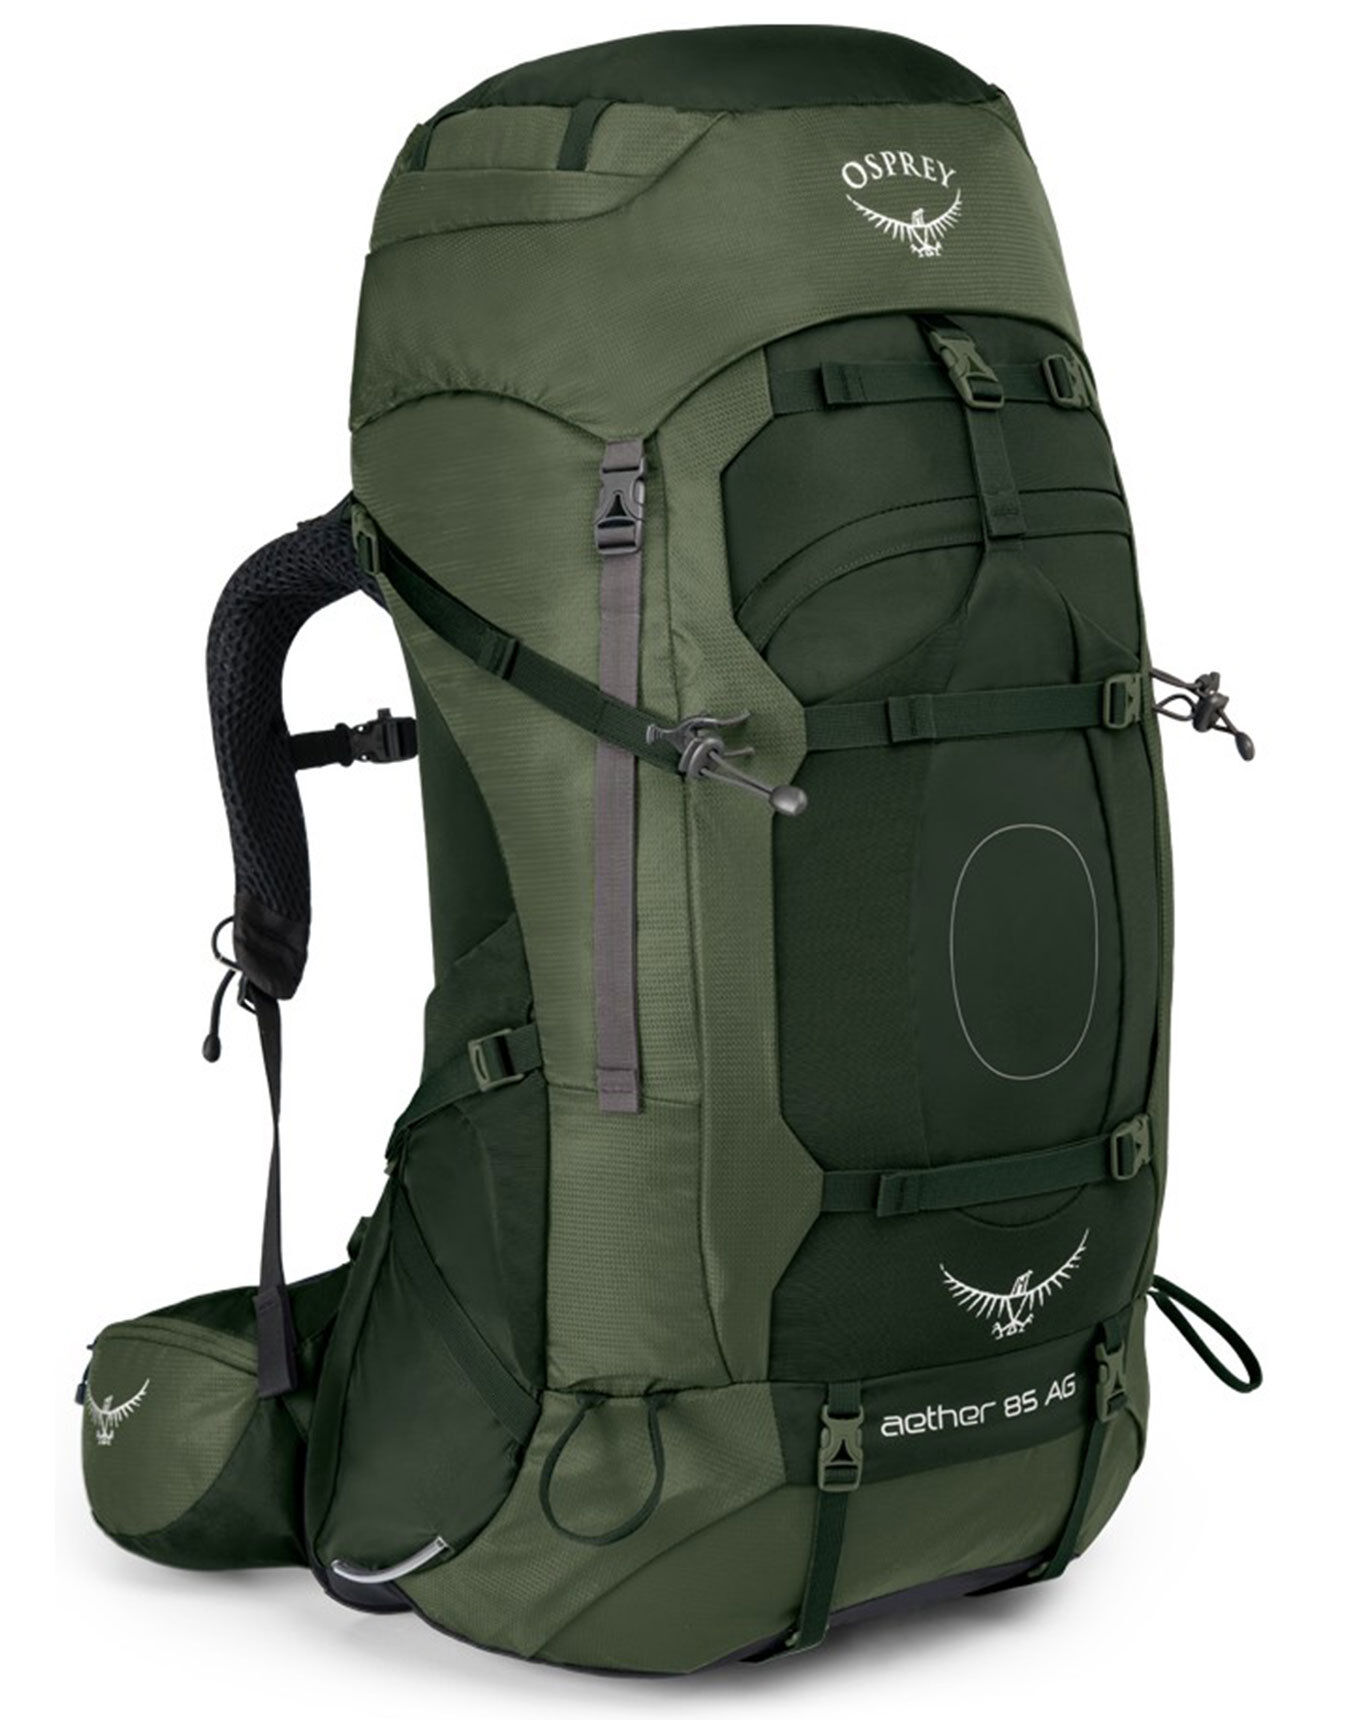 Osprey - Aether AG 85 - Backpack - Men's